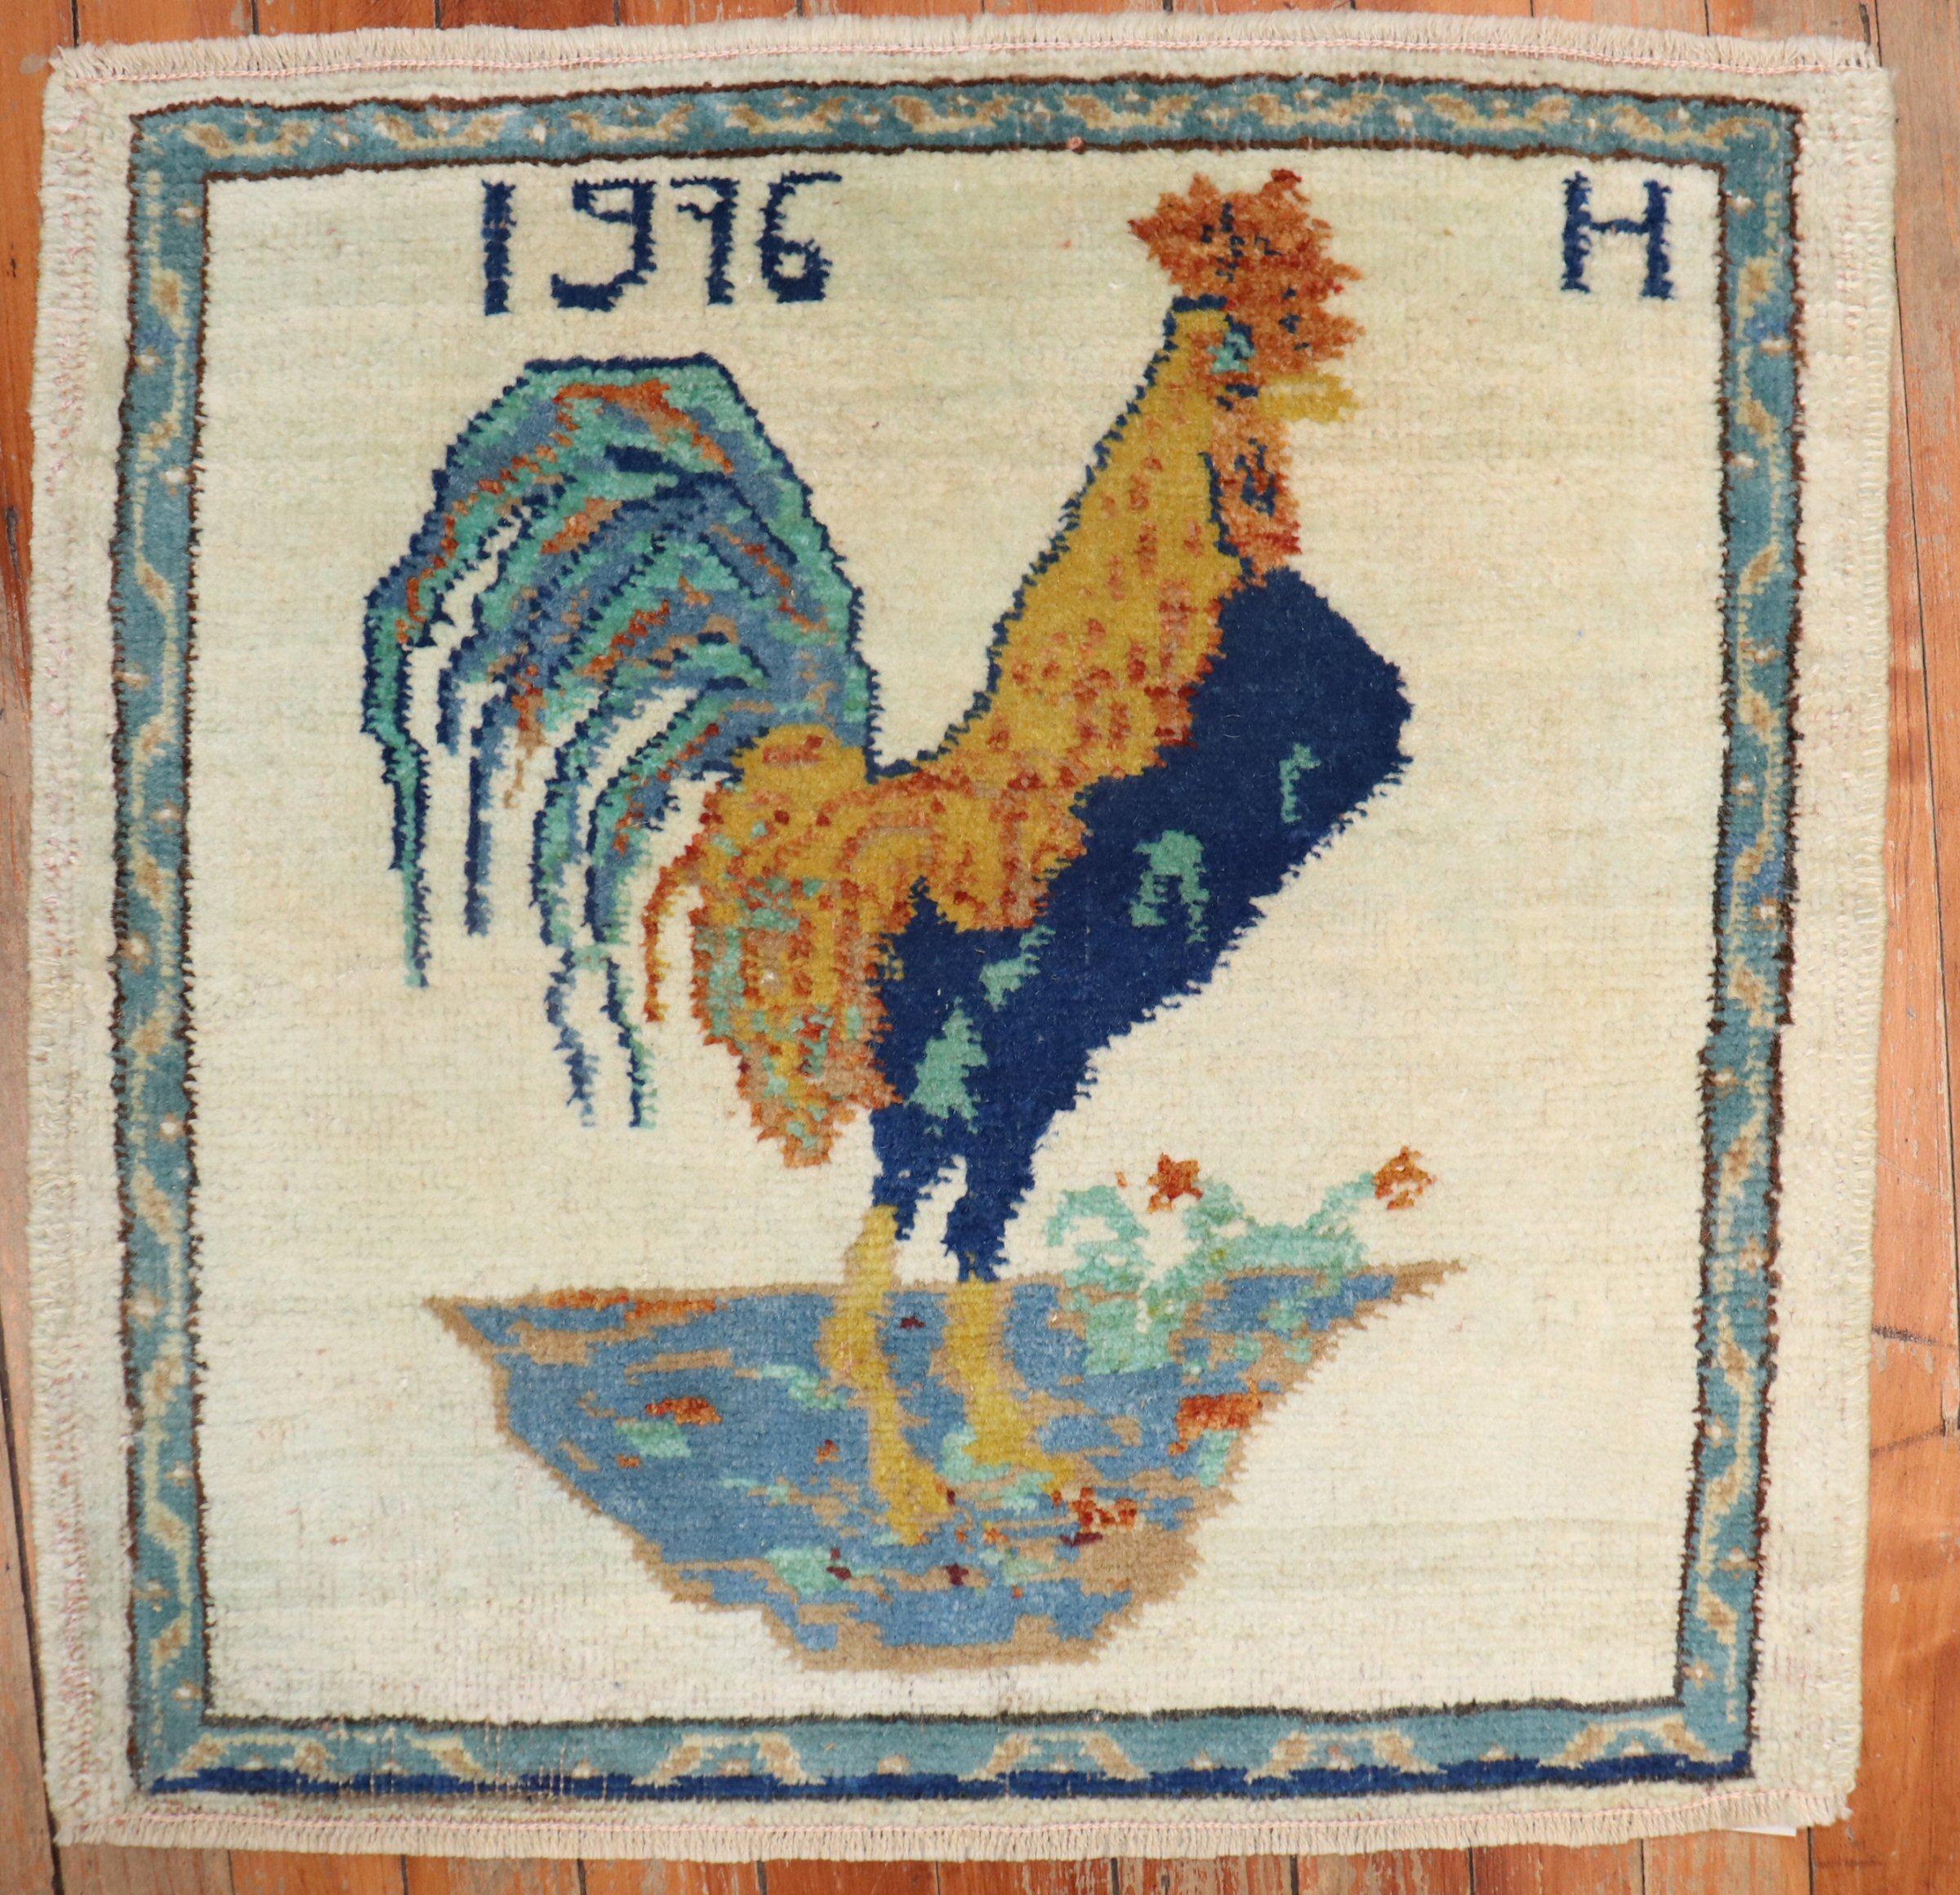 Türkischer Teppich im Vintage-Format, der einen Hahn auf einem elfenbeinfarbenen Feld abbildet. Datiert 1976

Maße: 1'10